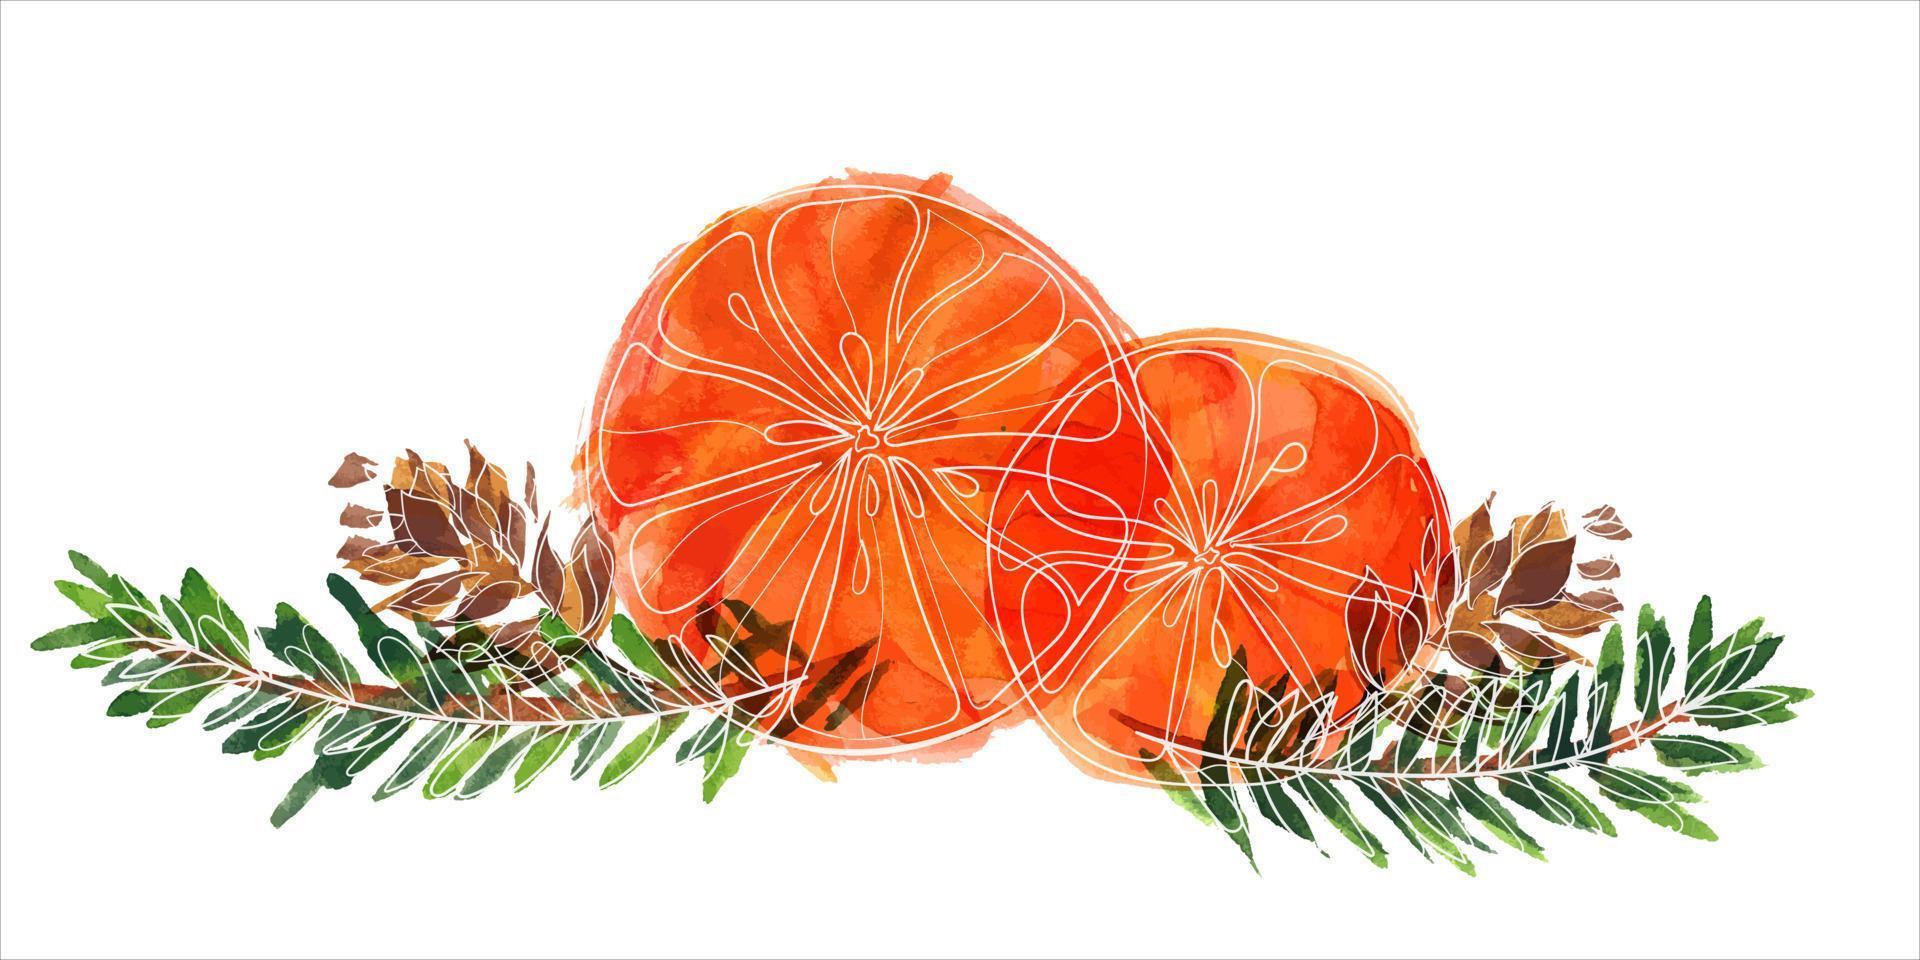 julbukett med apelsiner och kottar och grangrenar. dekorvinjett för söta jul- och nyårshälsningar och inbjudningar vektor